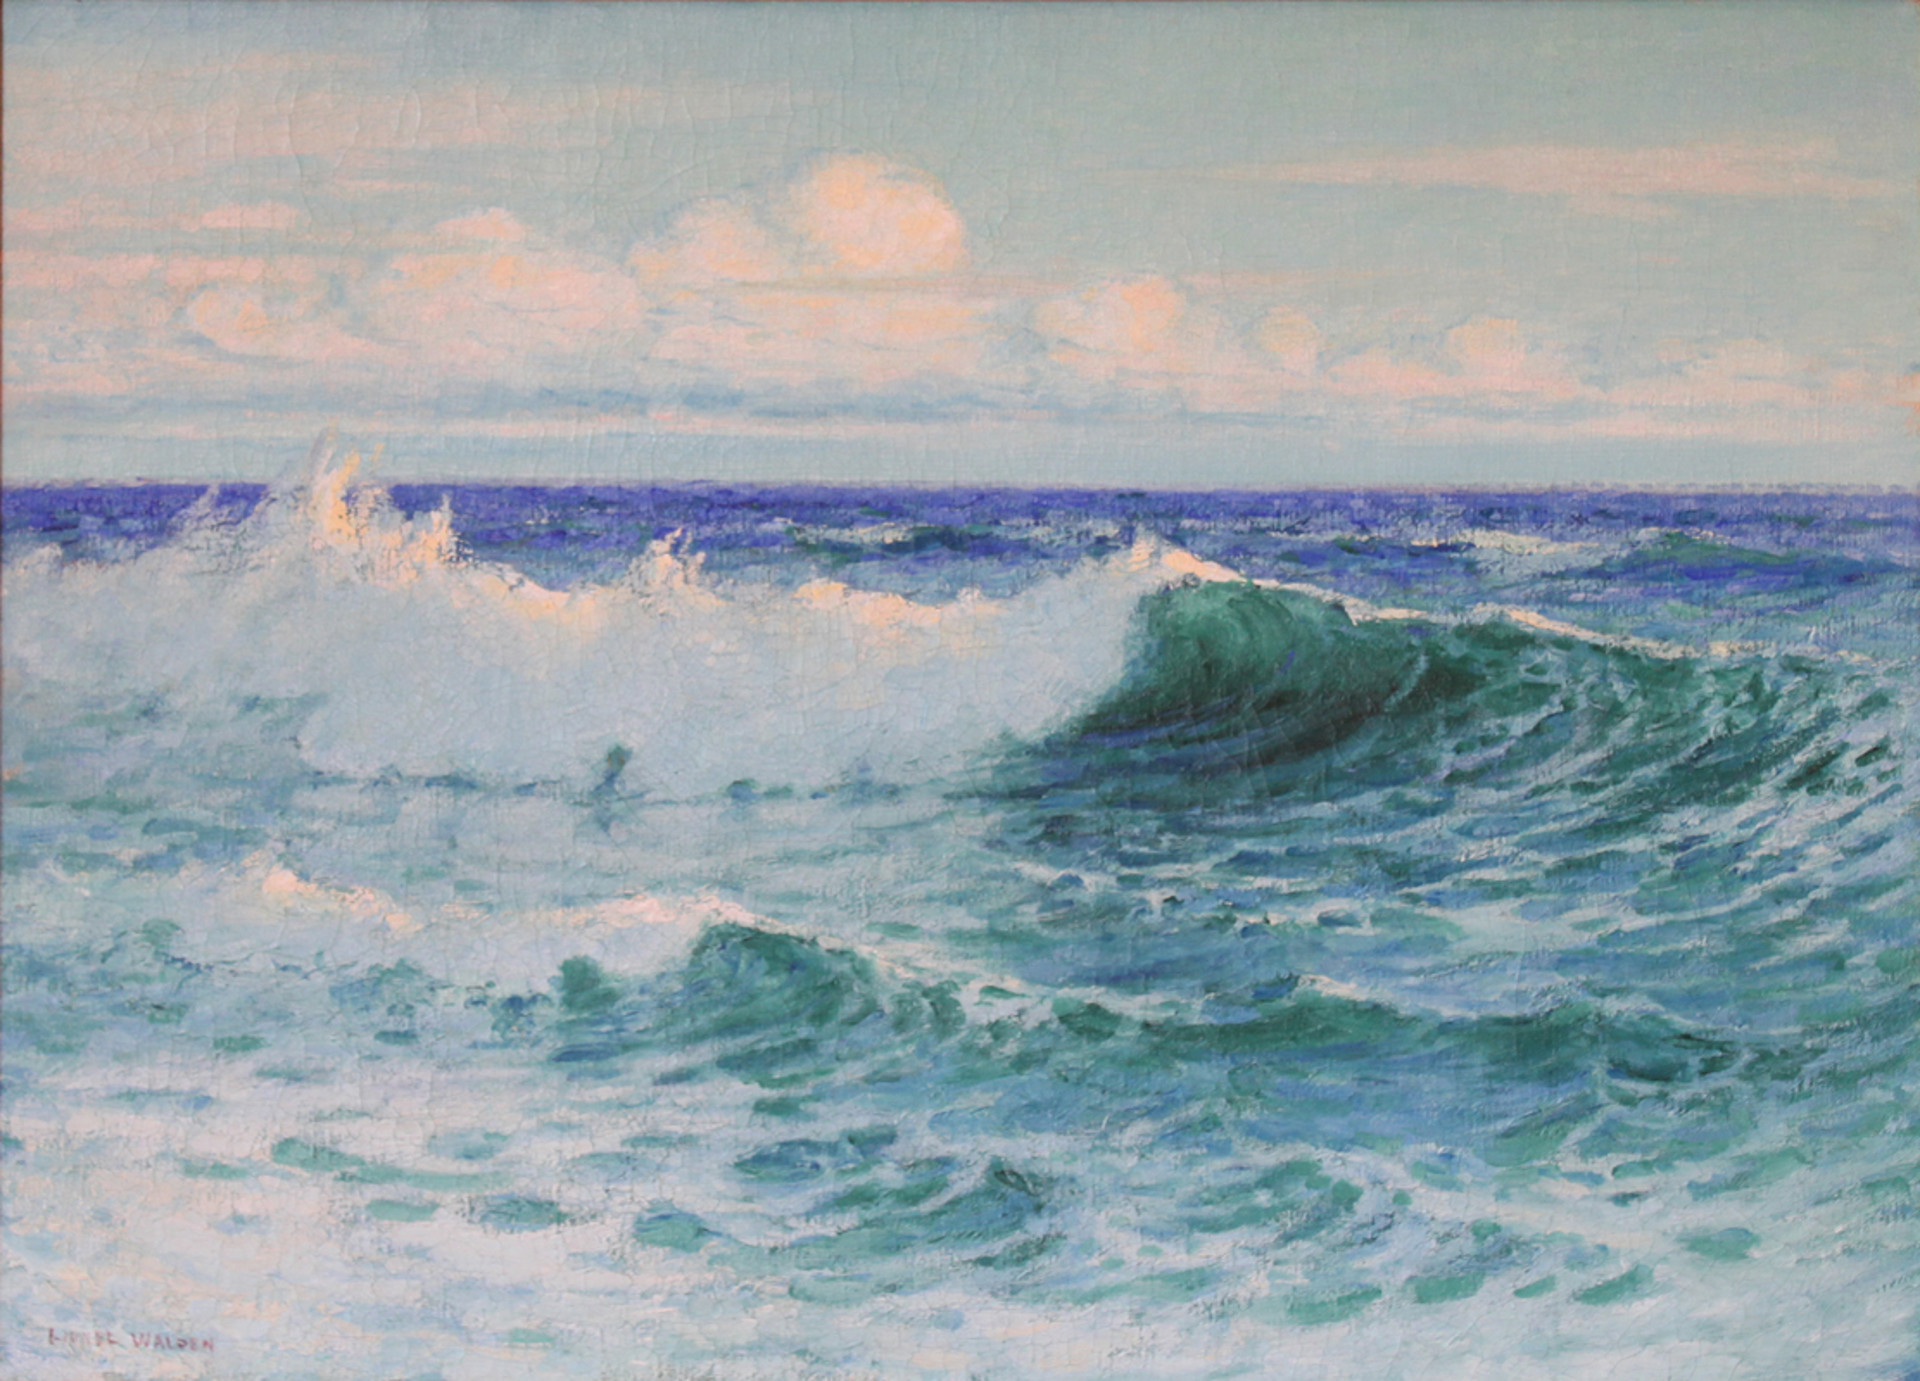 Breaking Wave, Hawaii by Lionel Walden